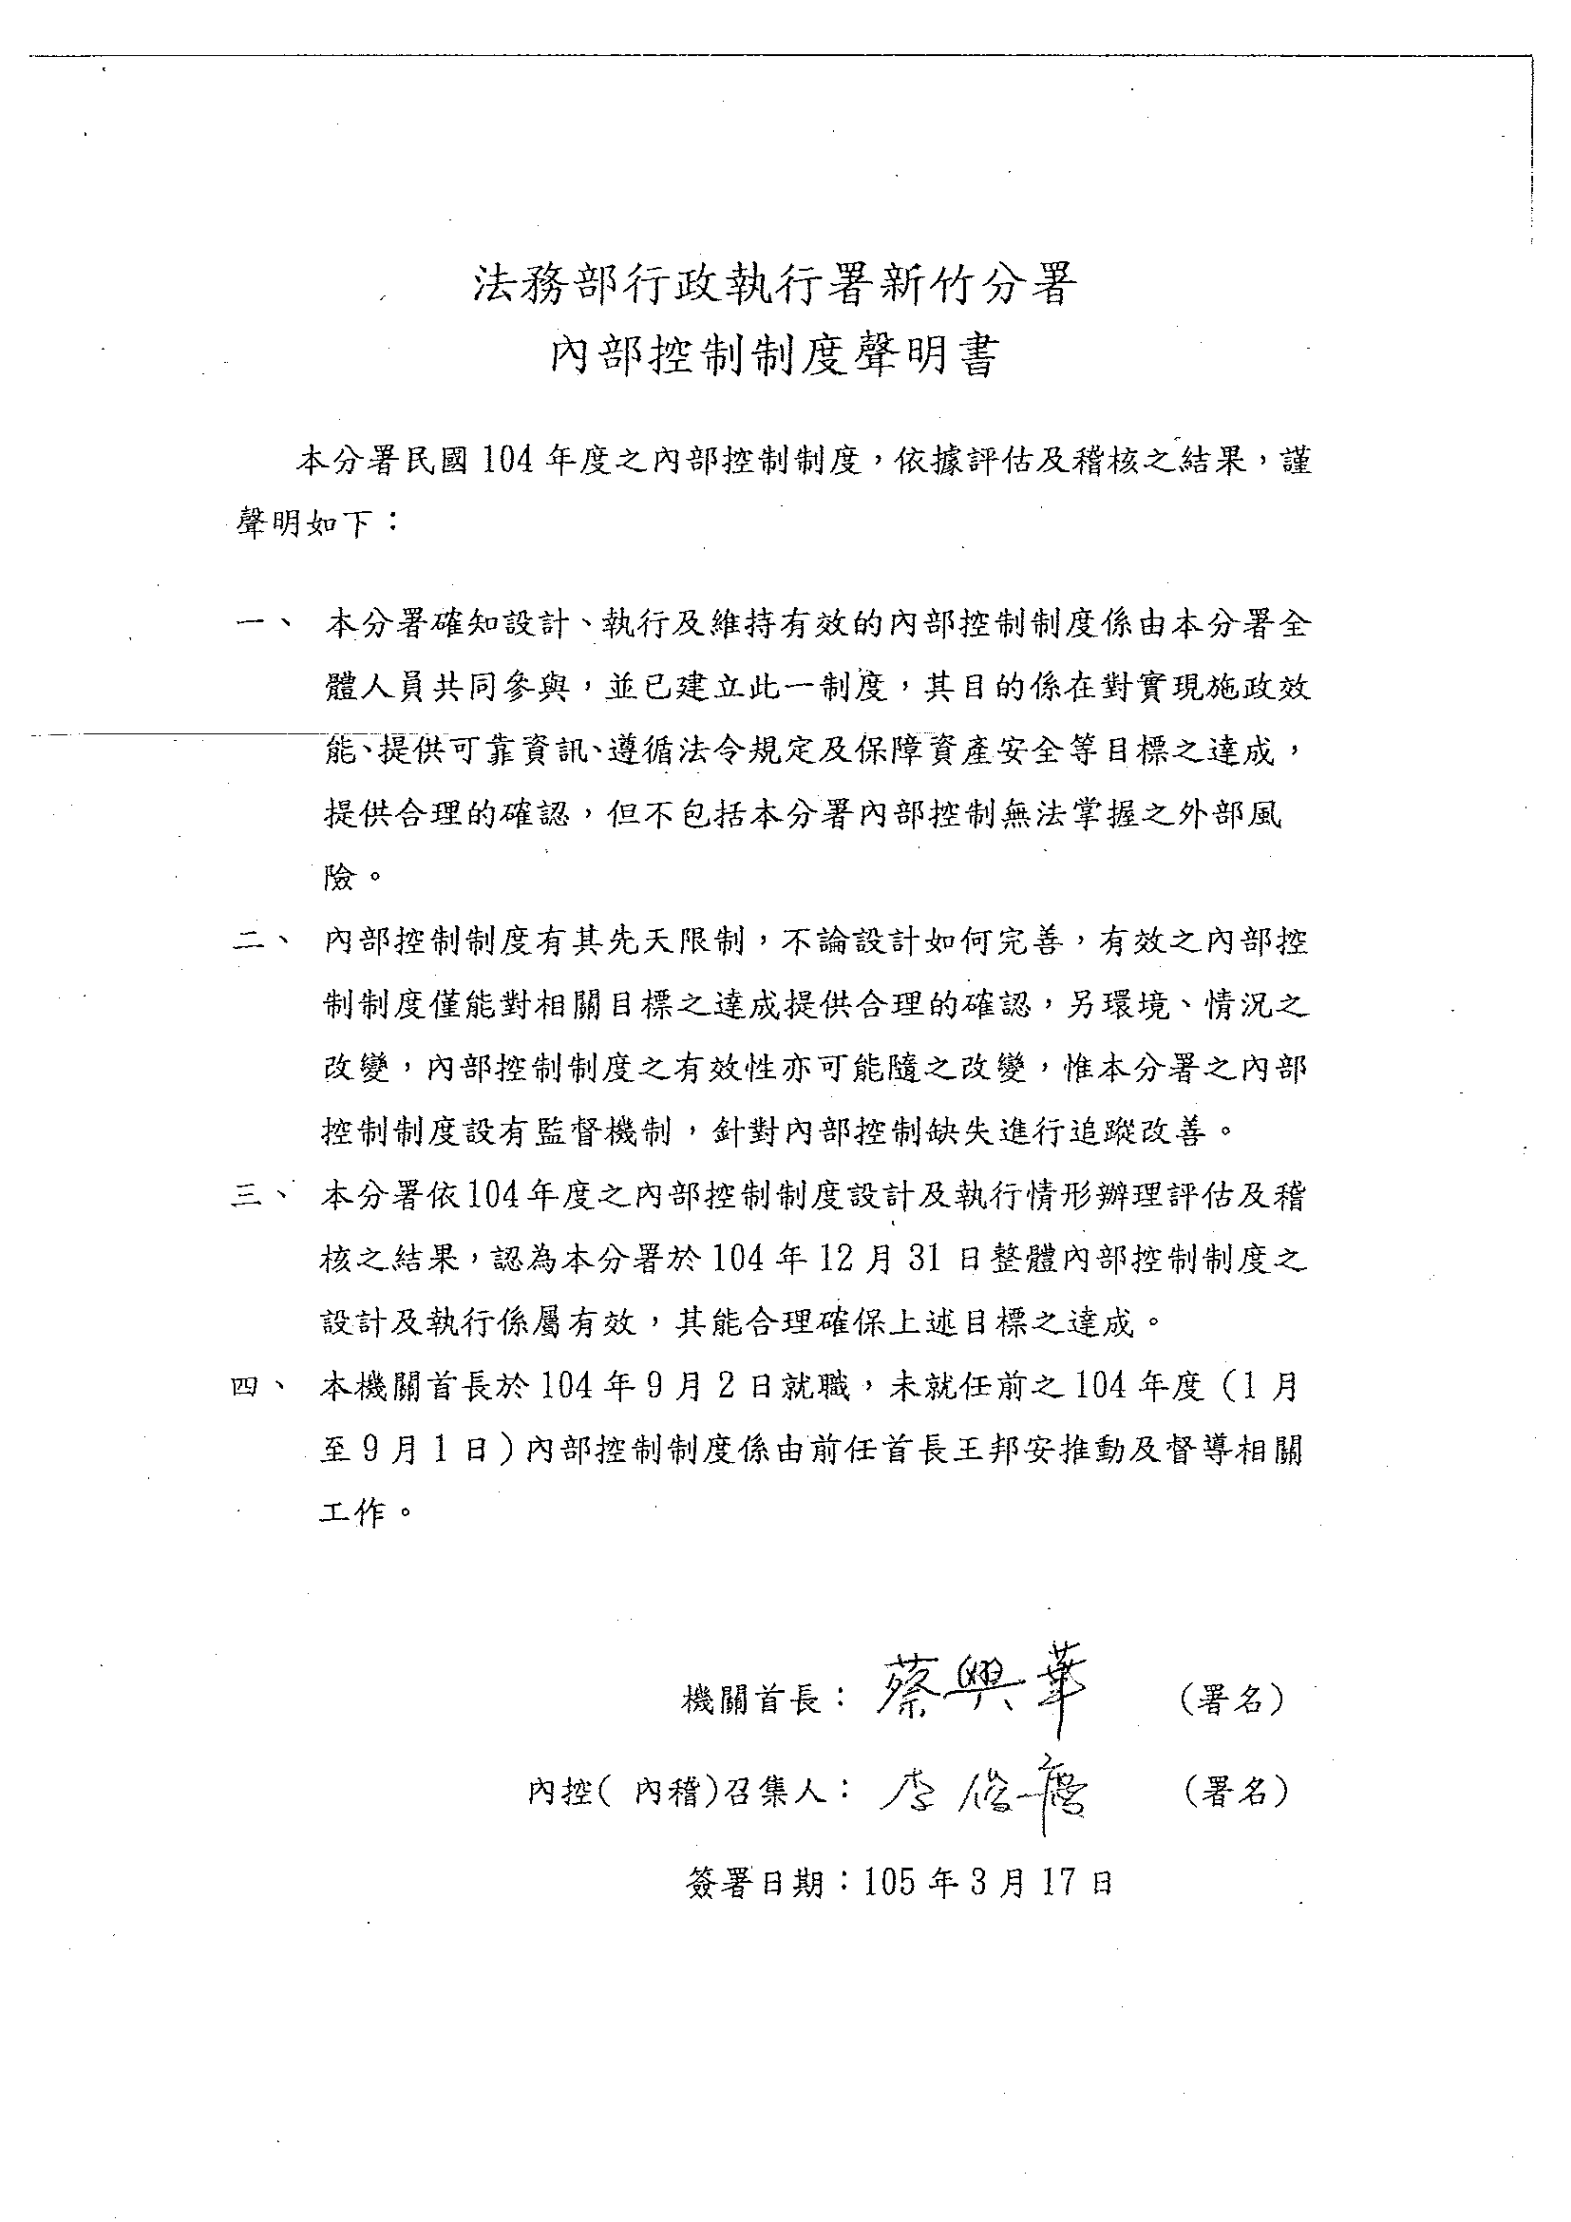 新竹分署104年度內部控制聲明書(公文簽核掃描圖)